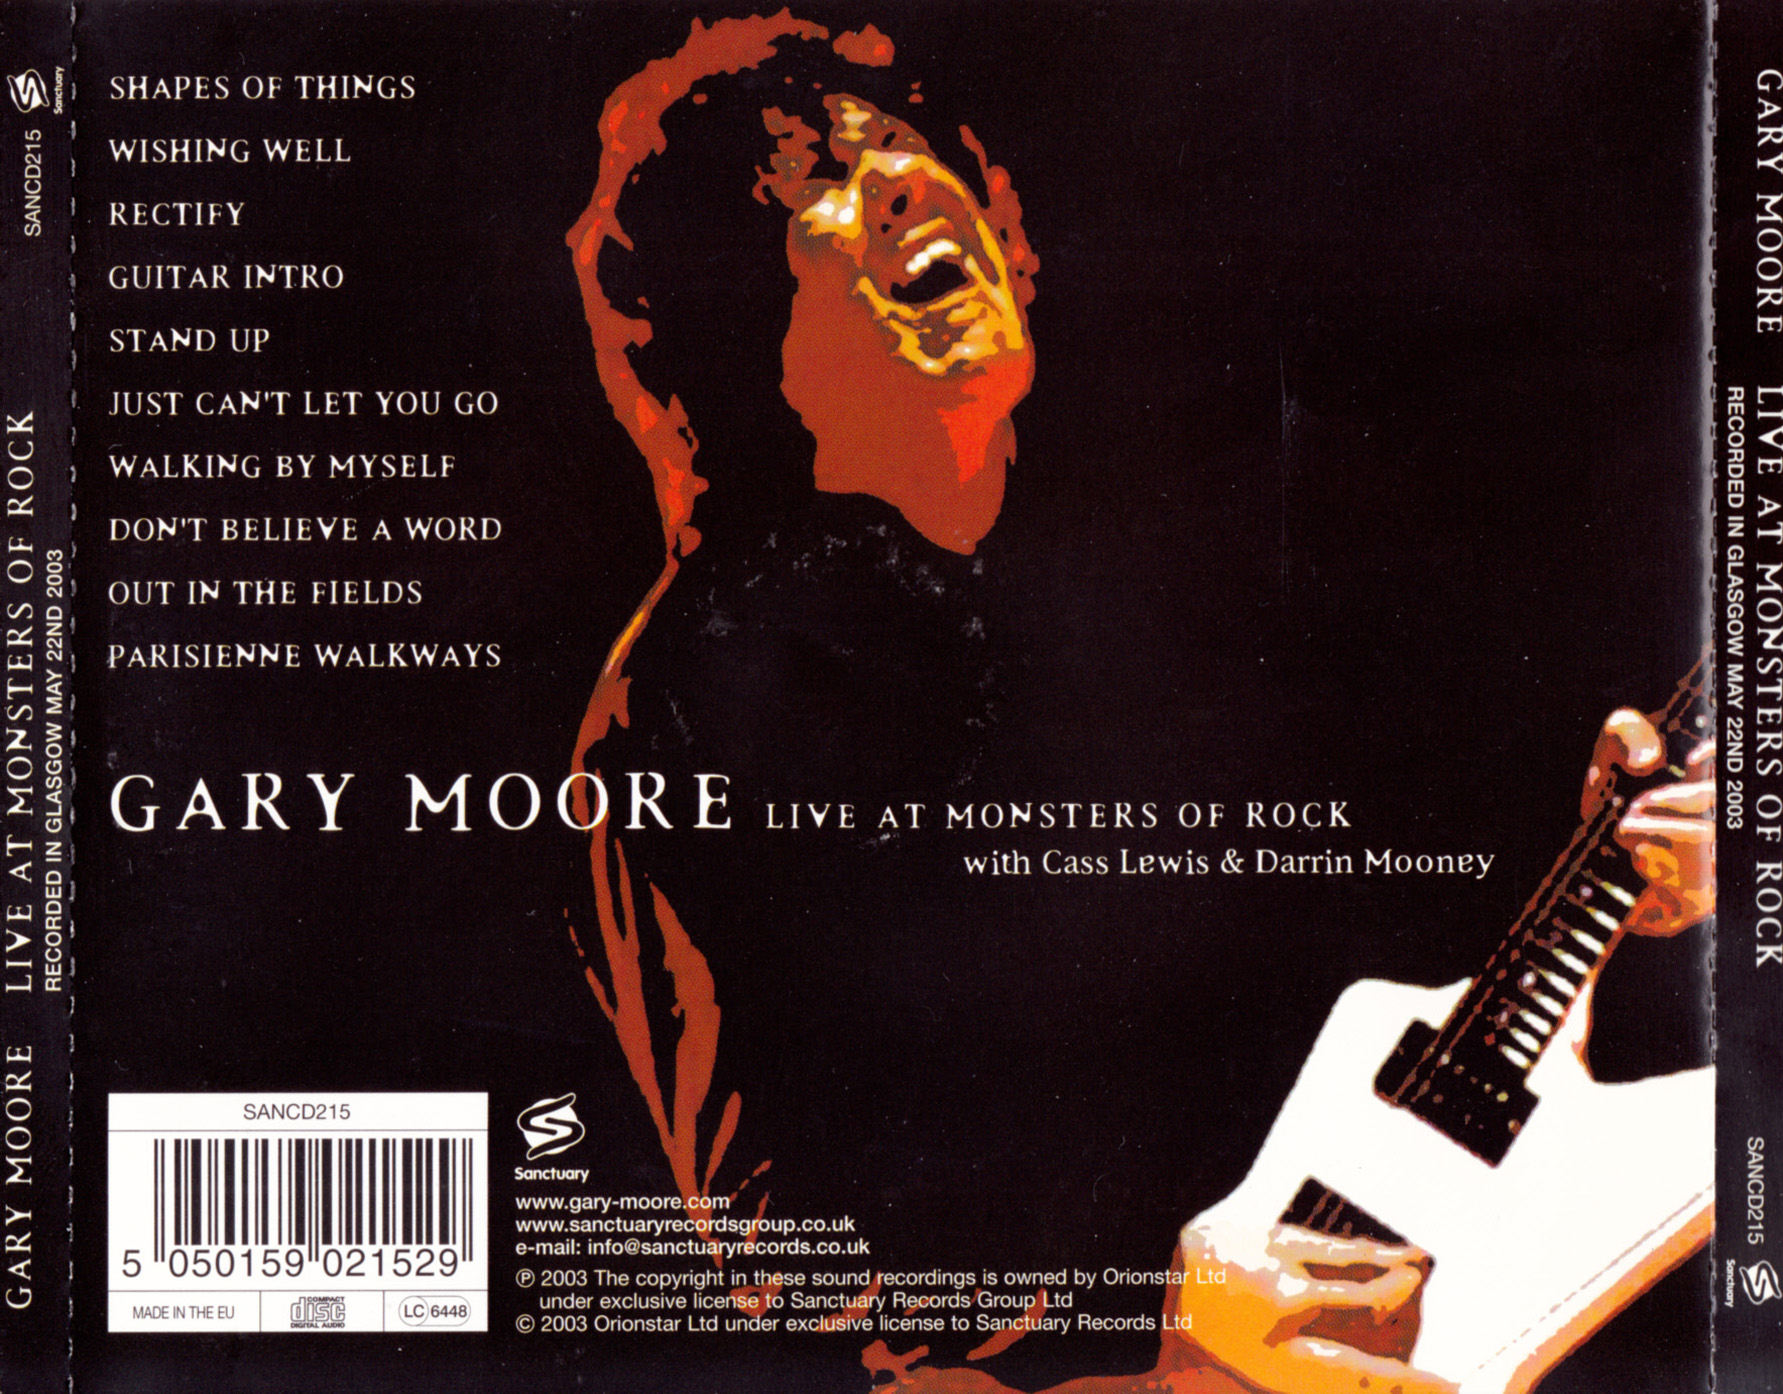 Walking myself. Gary Moore Live at Monsters of Rock. Гари Мур альбом лайв 1978. Gary Moore CD Cover. Gary Moore - Parisienne Walkways.